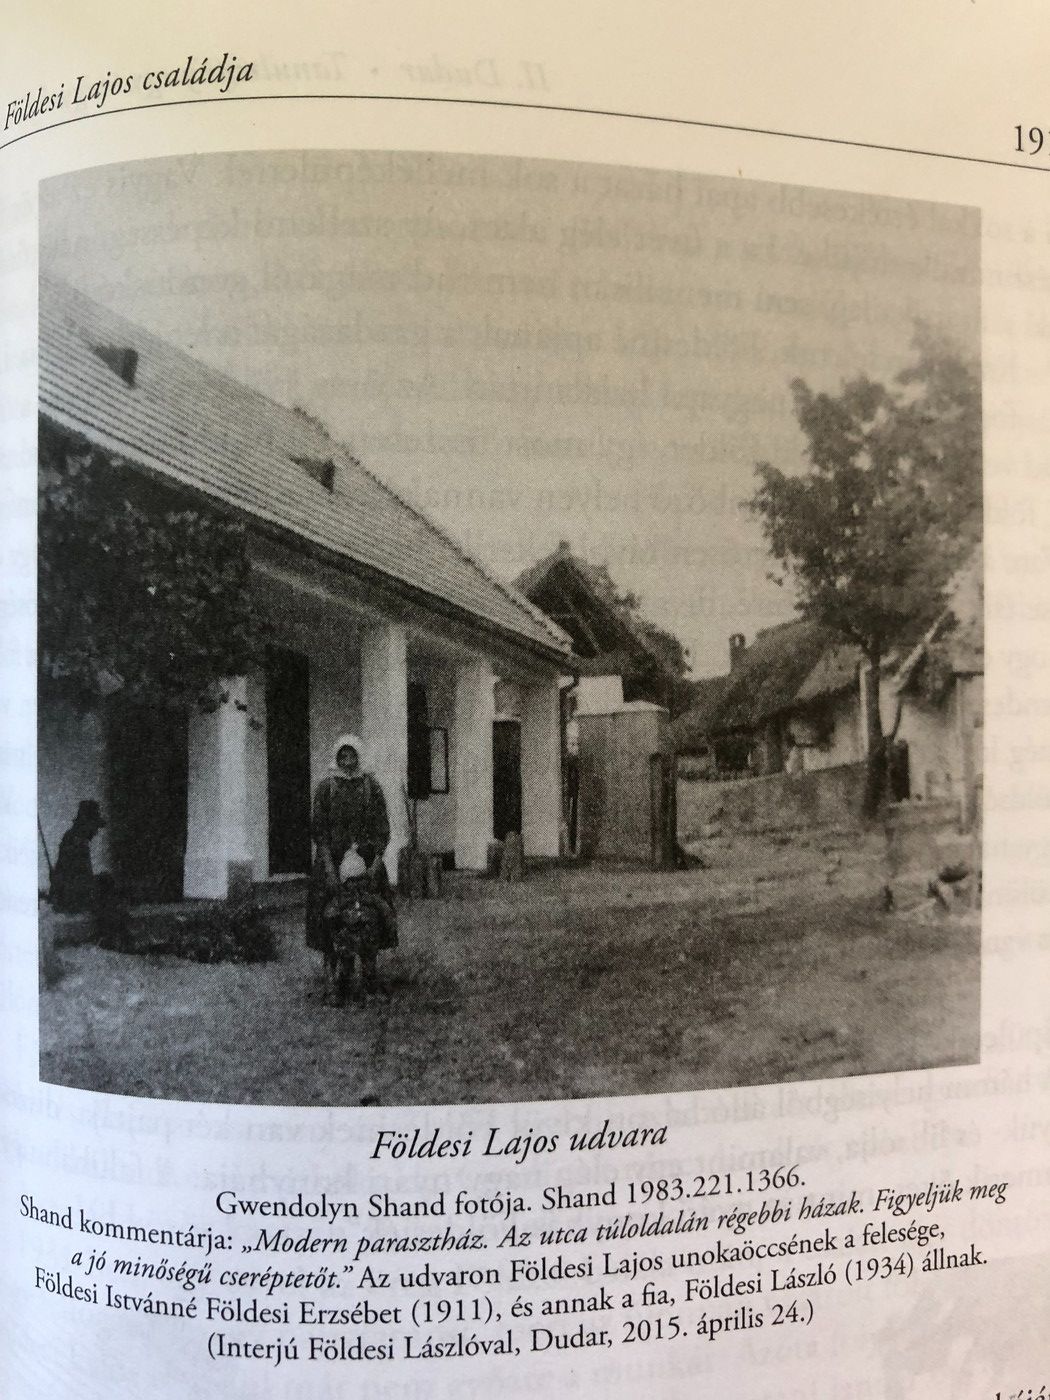 Kép a könyvből, rajta egy régi parasztház